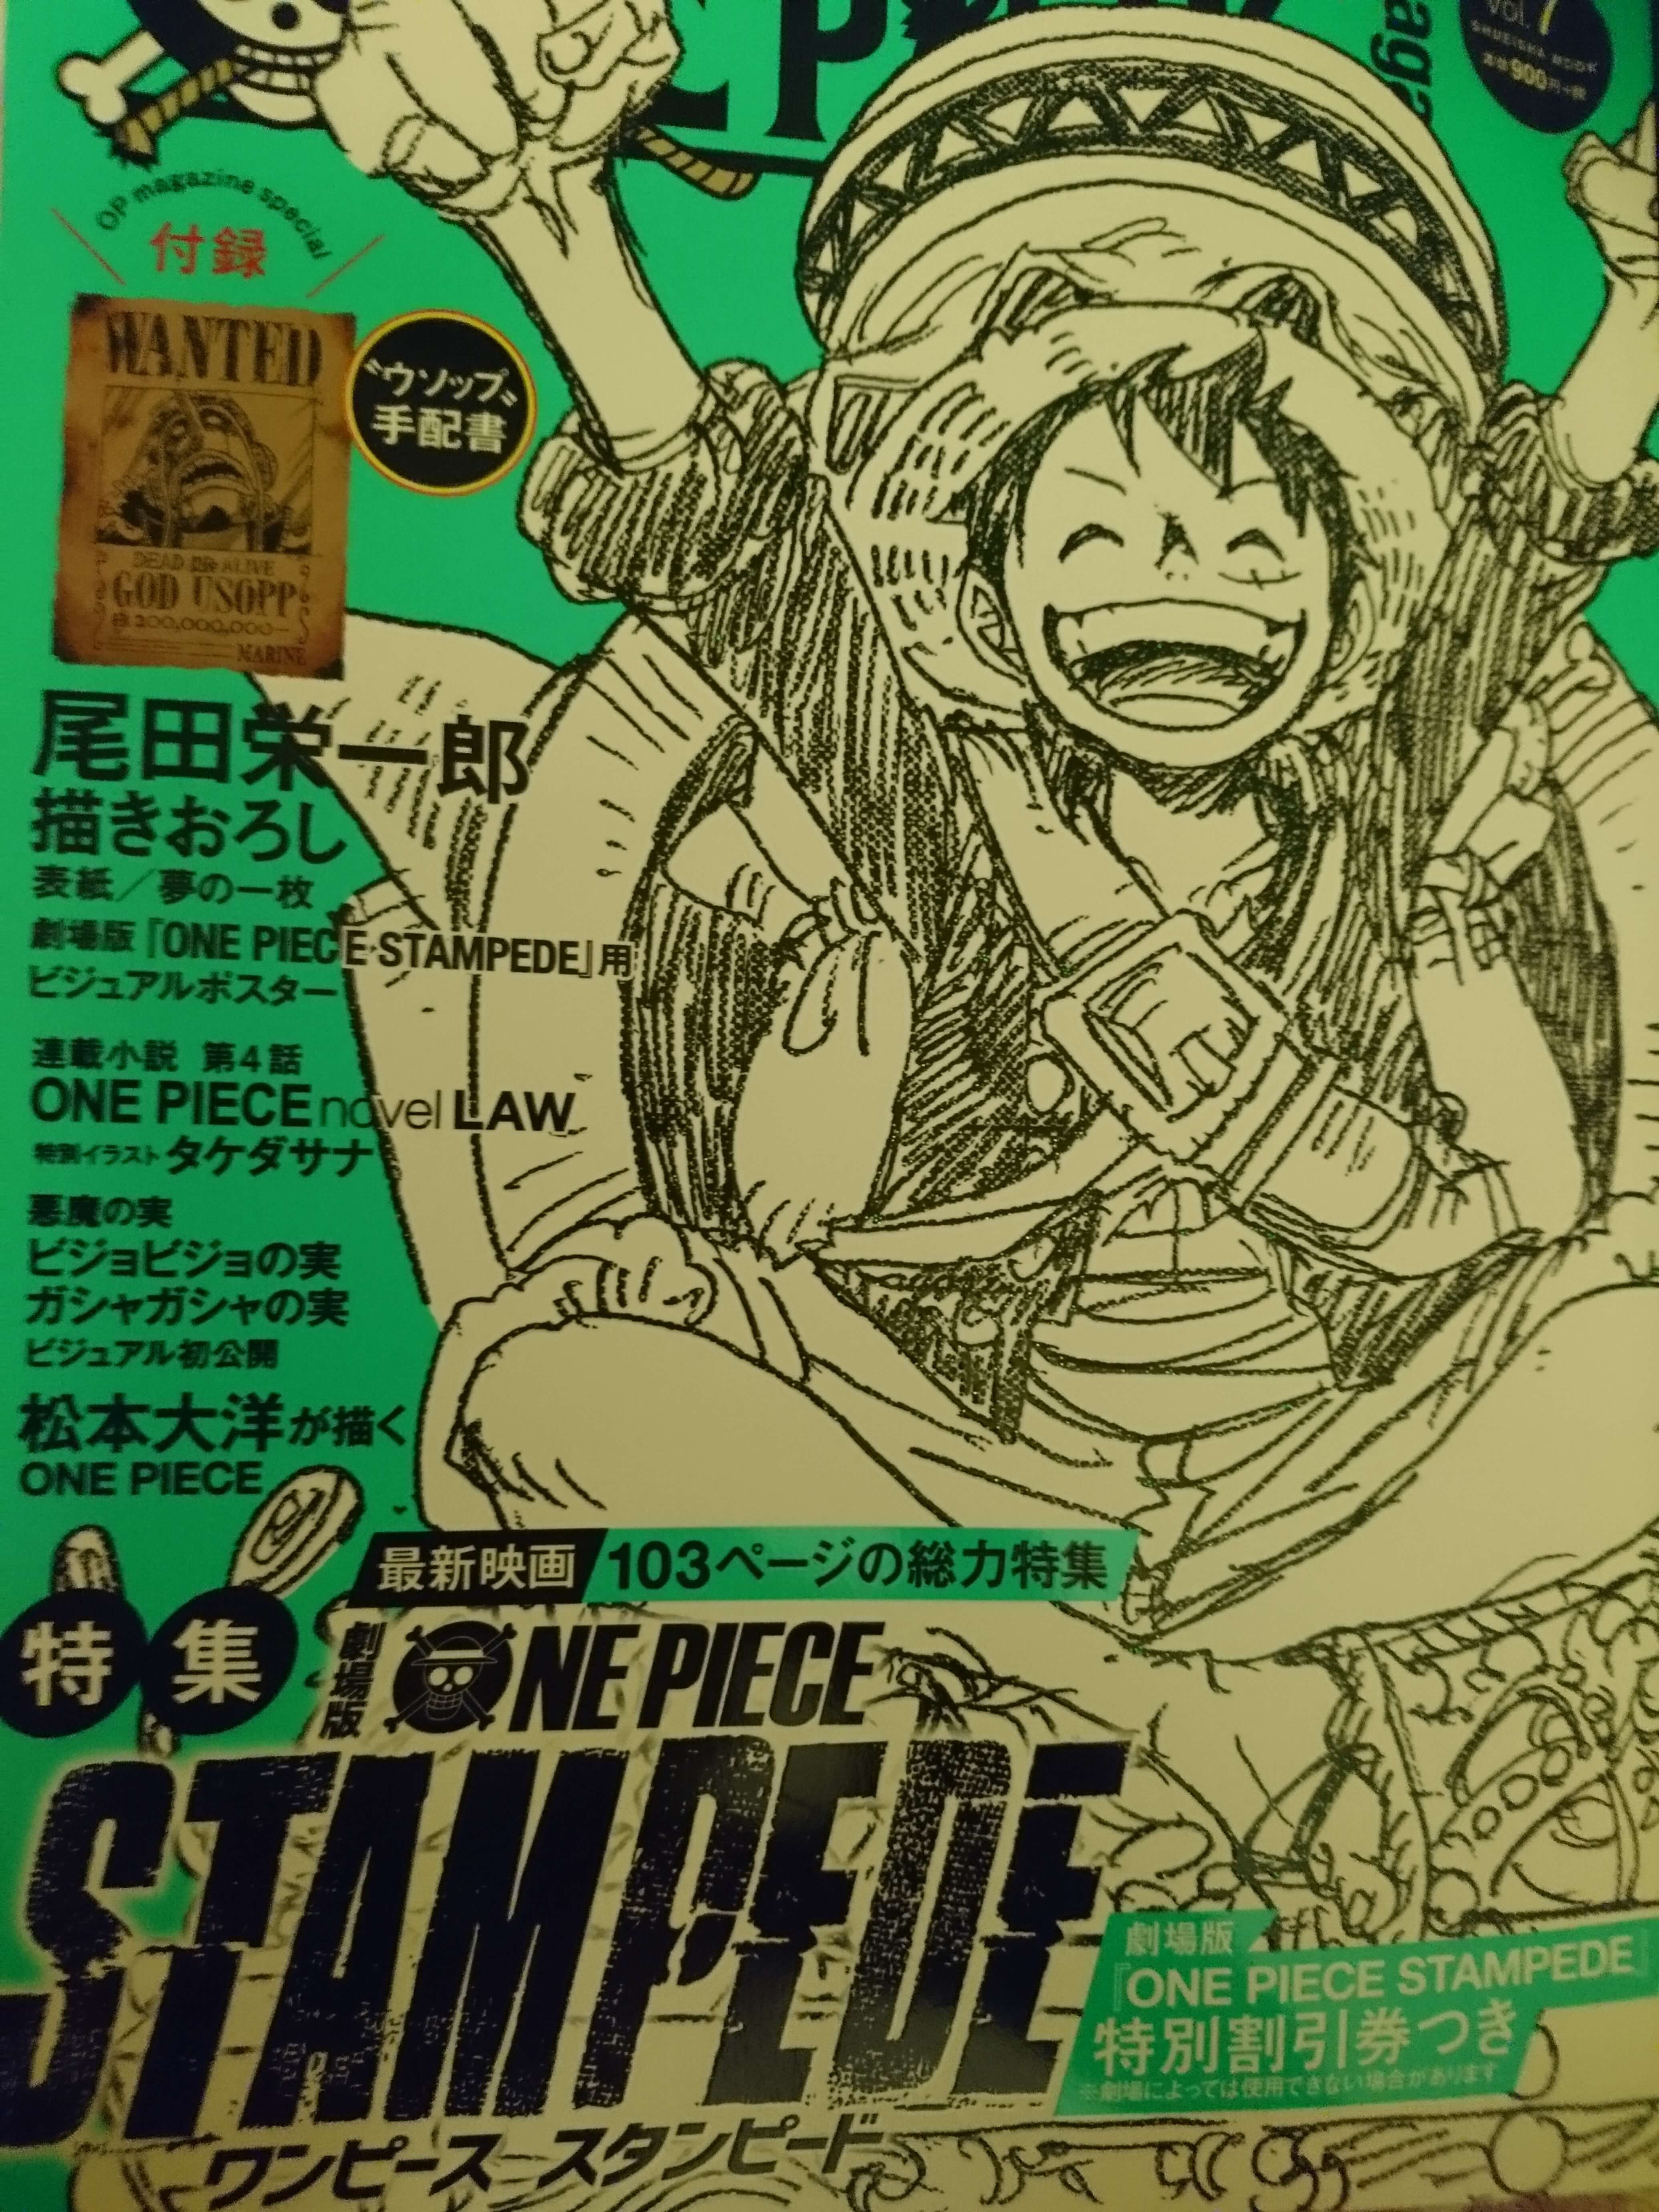 ワンピースマガジン第７弾 One Piece Magazine Vol 7 感想 考察 映画 スタンピード 特集 夢 の１枚 はクロコダイル ドフラミンゴのオシャレ番長 ローの小説堂々完結